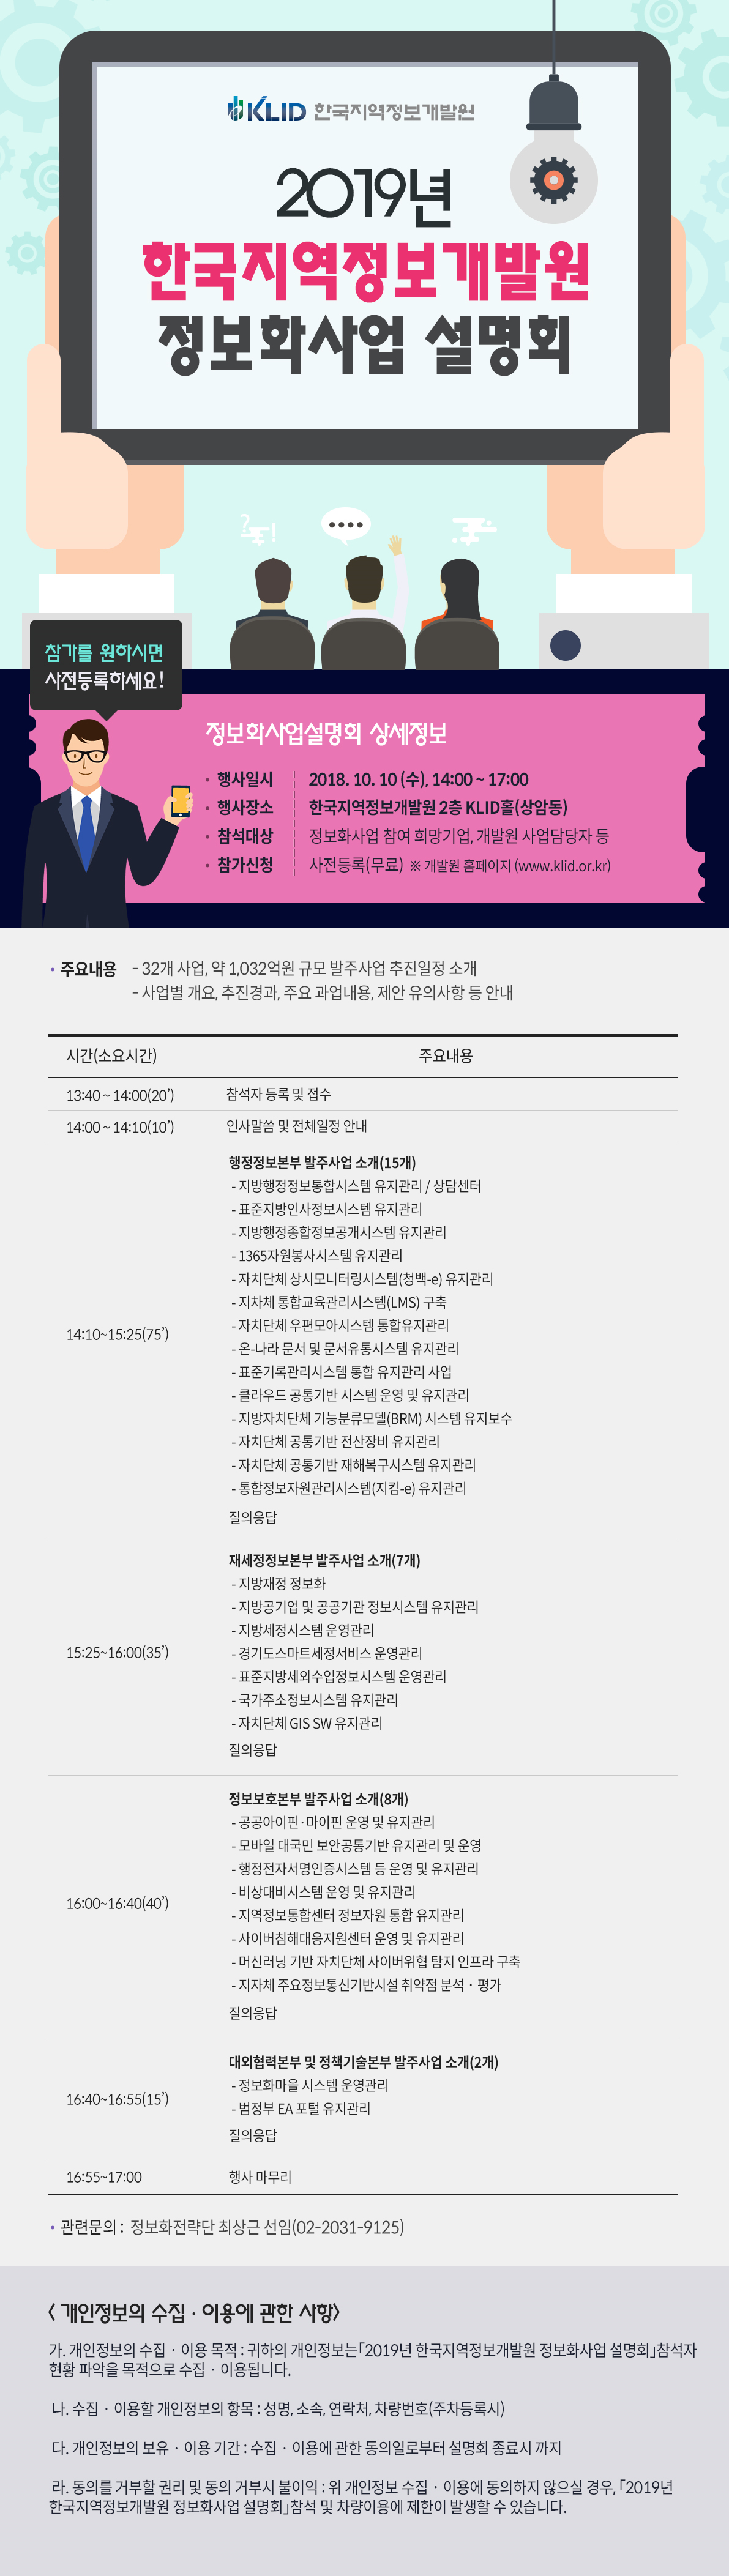 2019 한국지역정보개발원 정보화사업 설명회 개최 안내 첨부#2